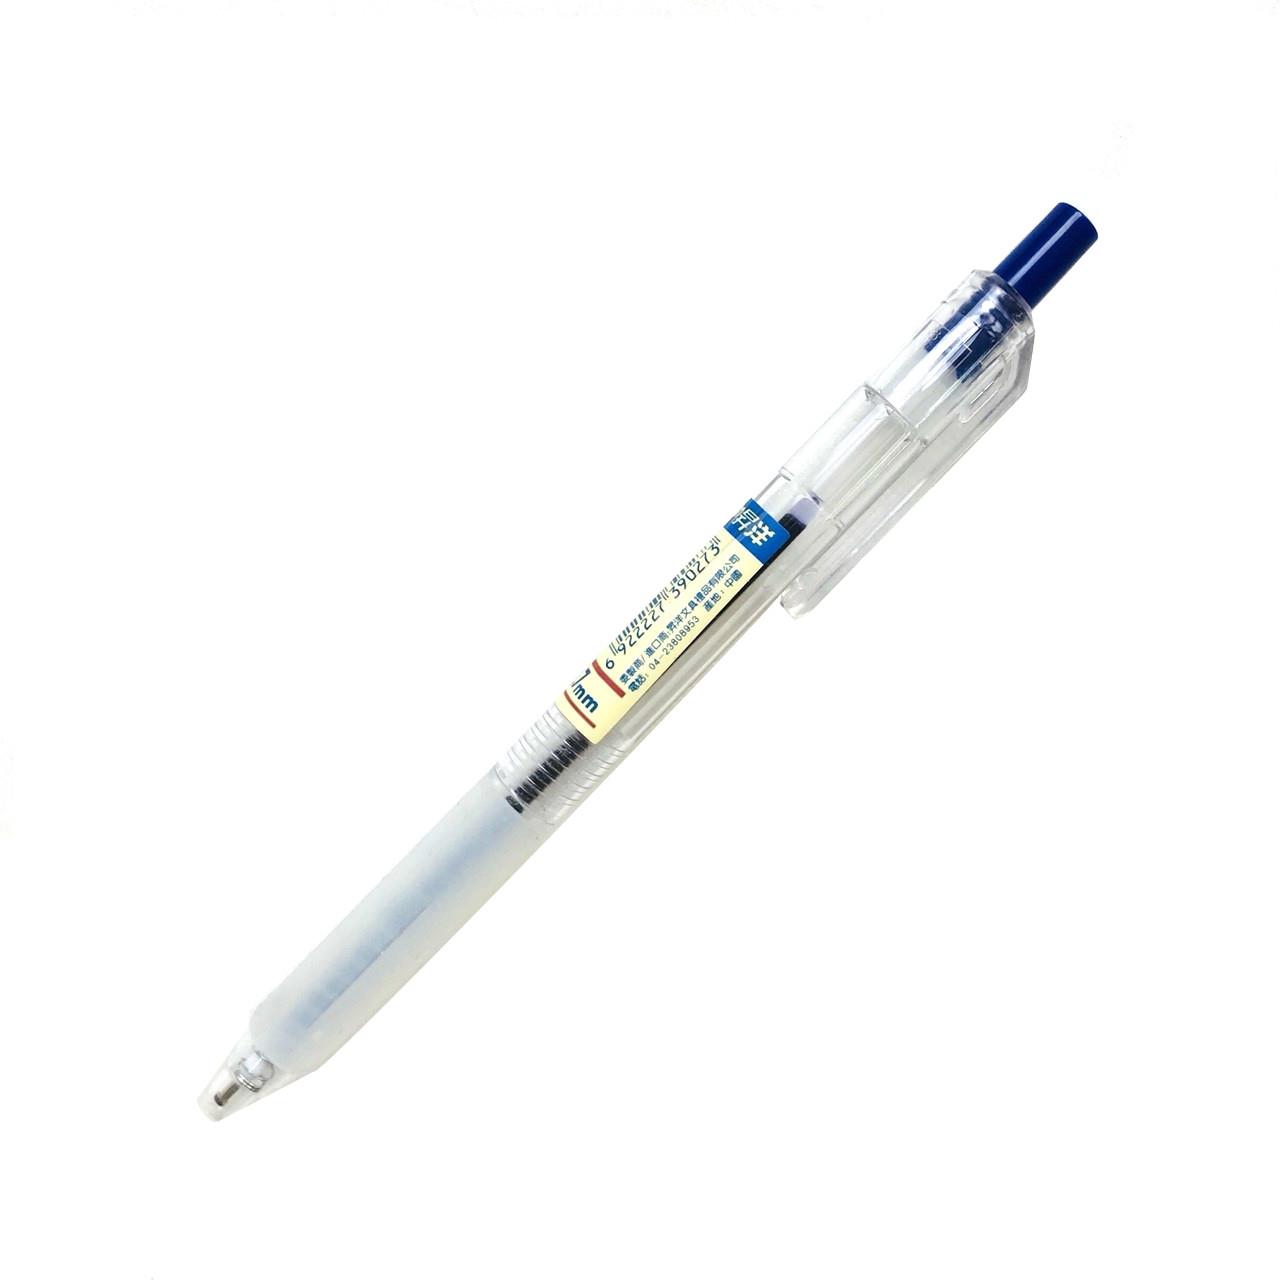 辦公專用原子筆 (0.7) (藍色)